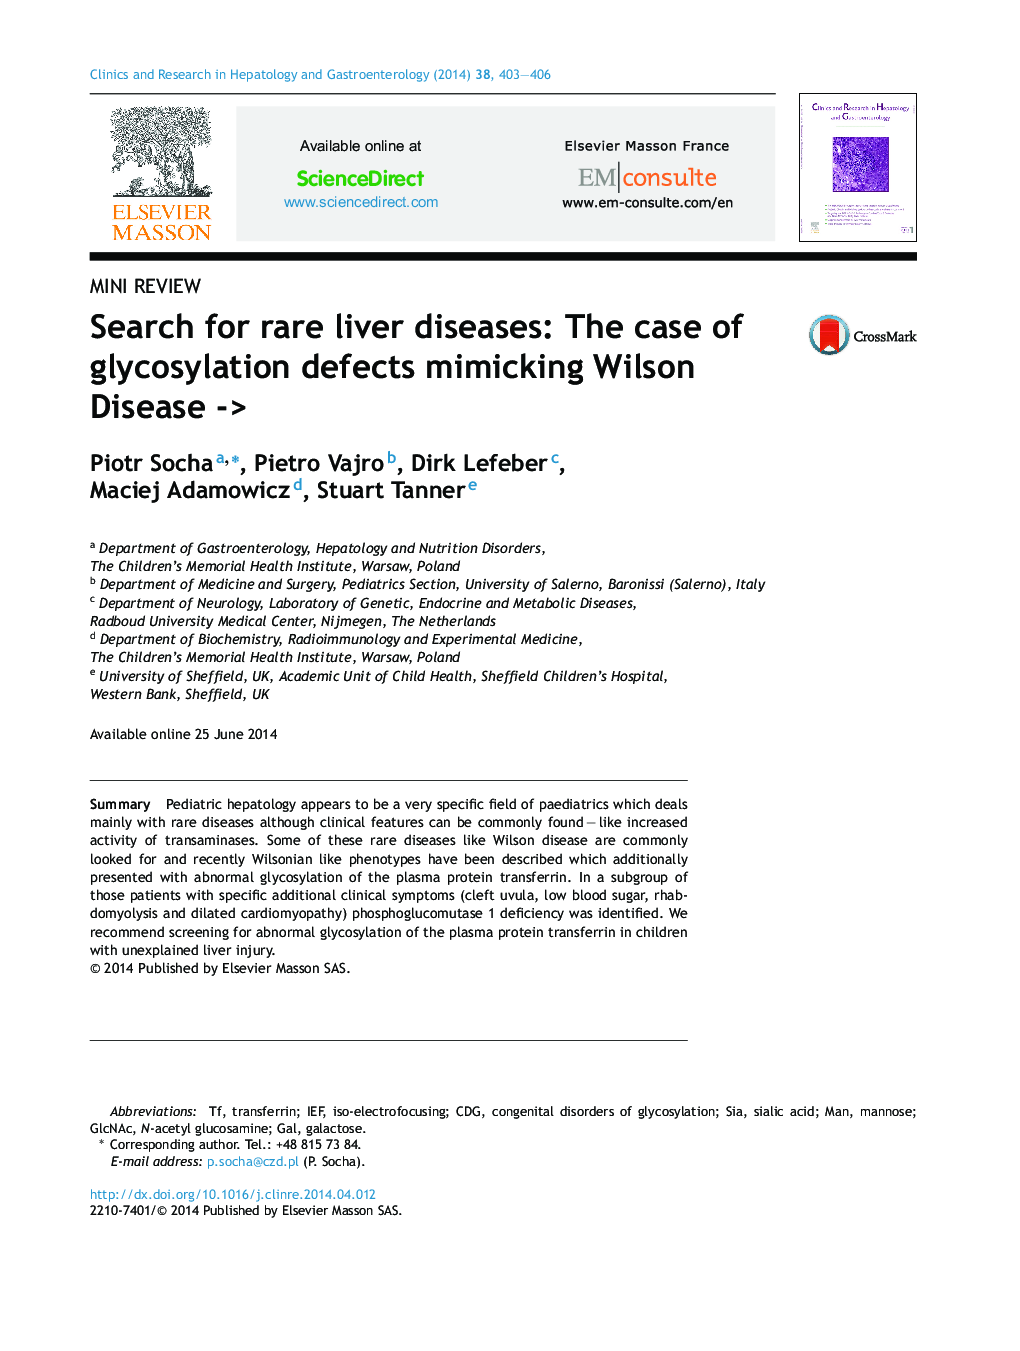 جستجو برای بیماری های نادر کبدی: مورد نقص های گلیکوزیلاتی تقلید بیماری ویلسون -> 